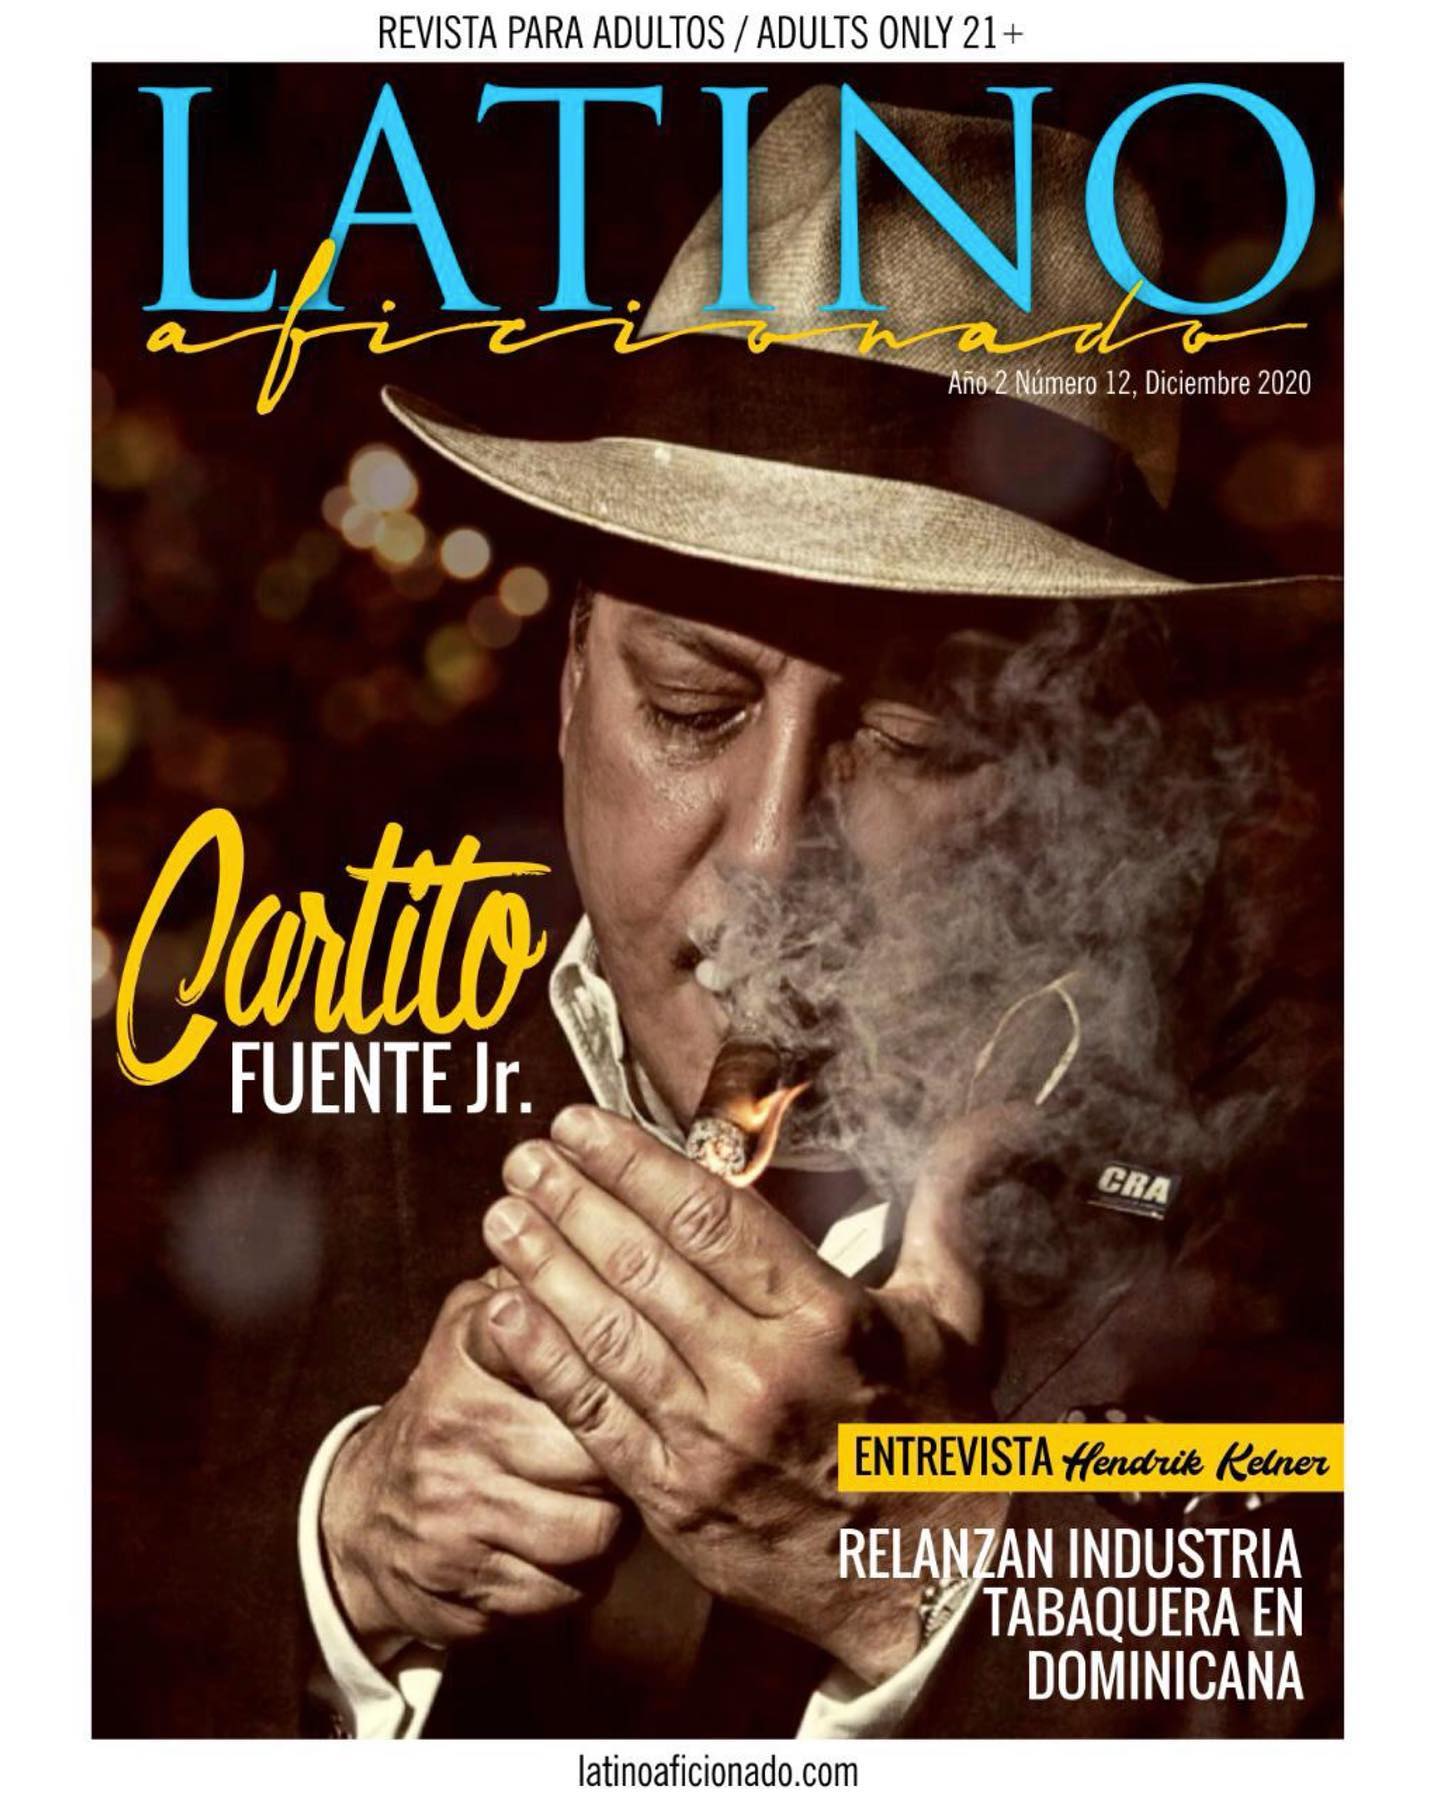 Acabou de sair a nova edição da revista “Latino Aficionado”, e desta vez, escrevi uma matéria especial sobre a gigante brasileira, Dannemann